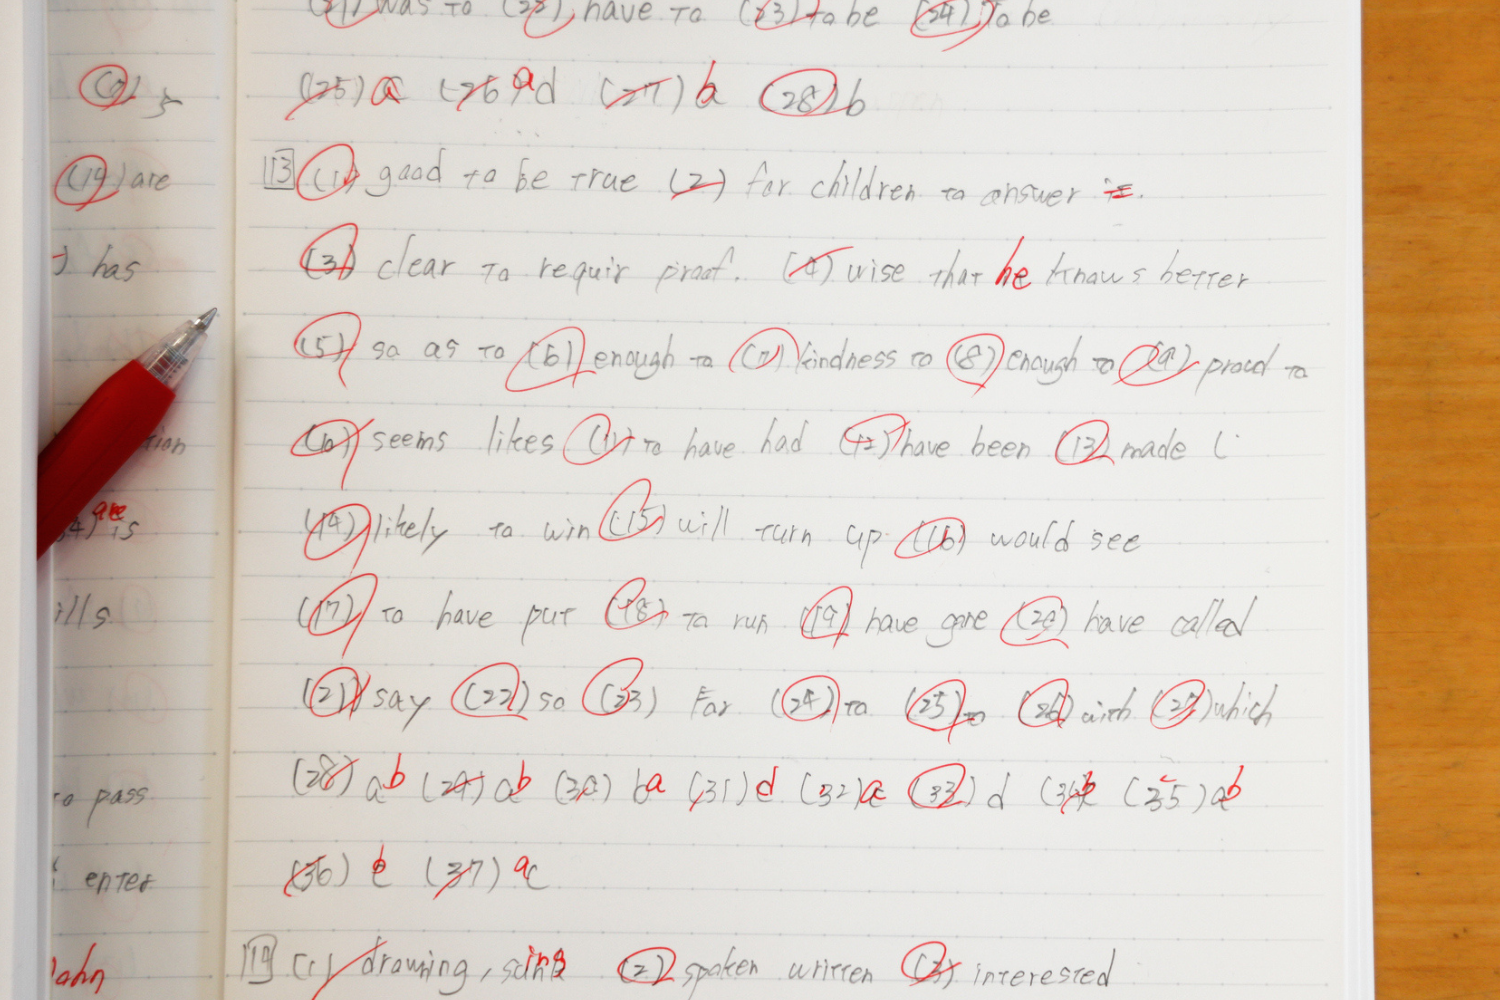 Internet stunned at teacher’s spelling correction on student’s homework